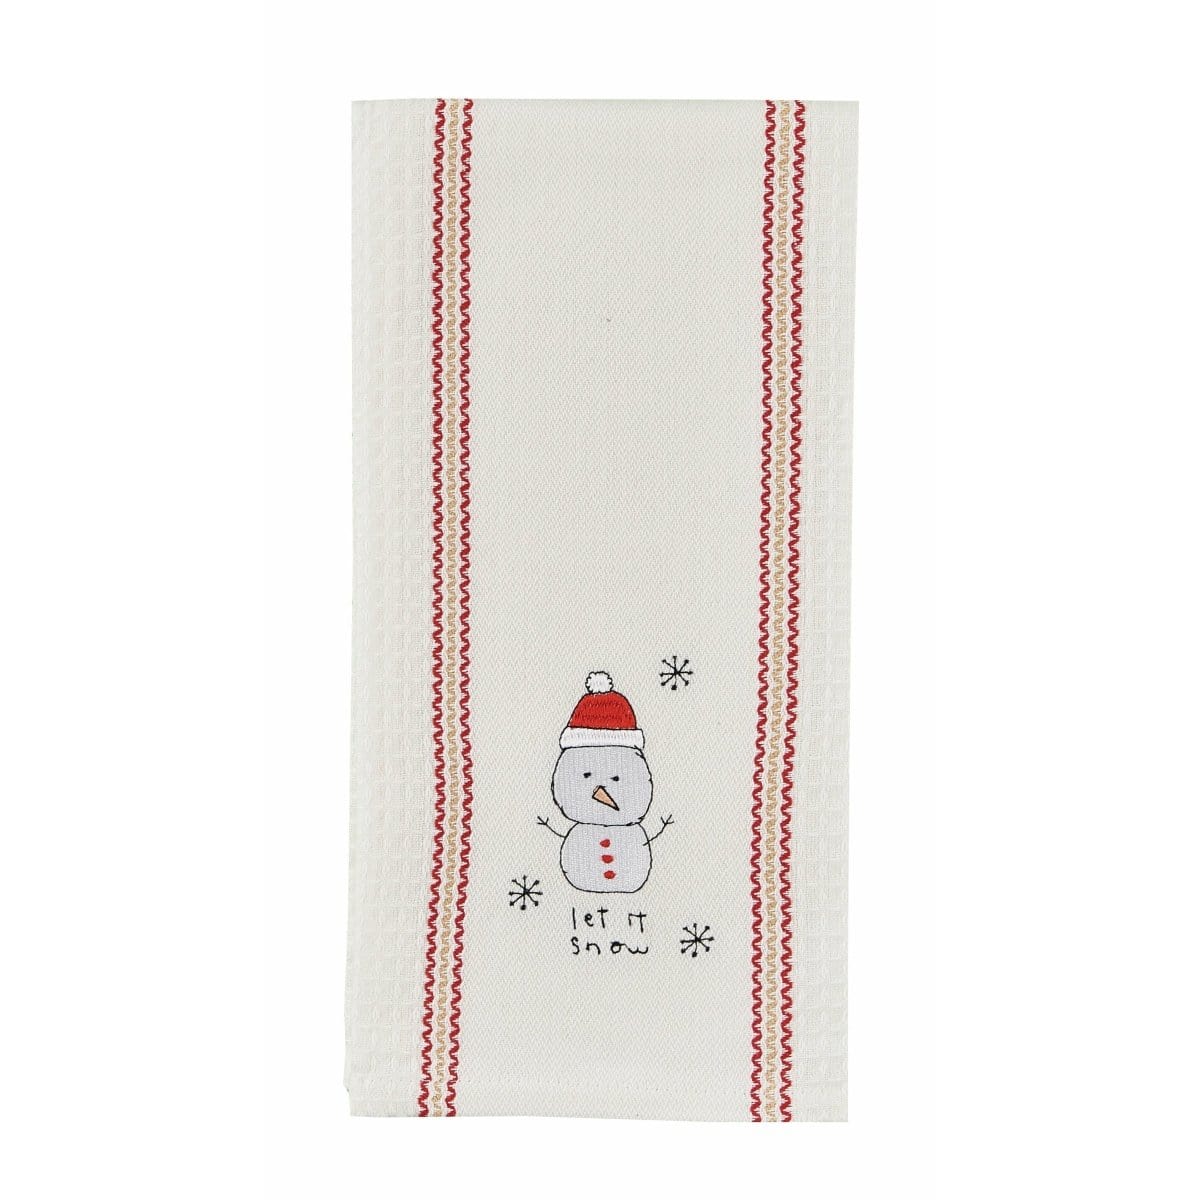 Snowpal Let it snow Decorative Towel-Park Designs-The Village Merchant